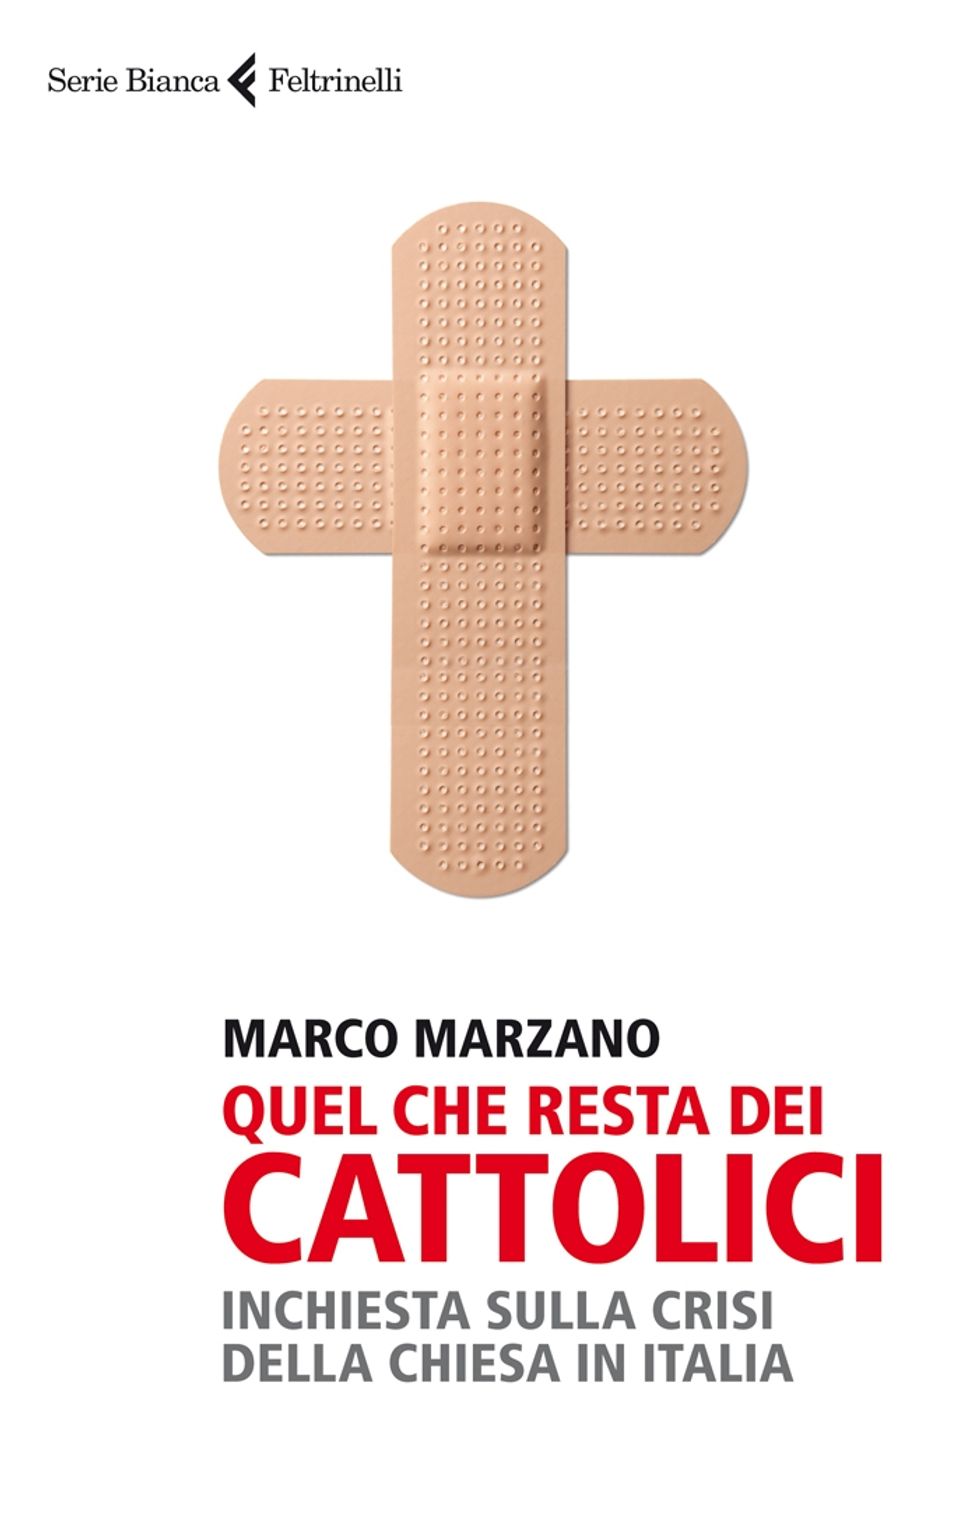 Quel che resta dei cattolici in Italia: Marzano alle prese con la crisi della Chiesa